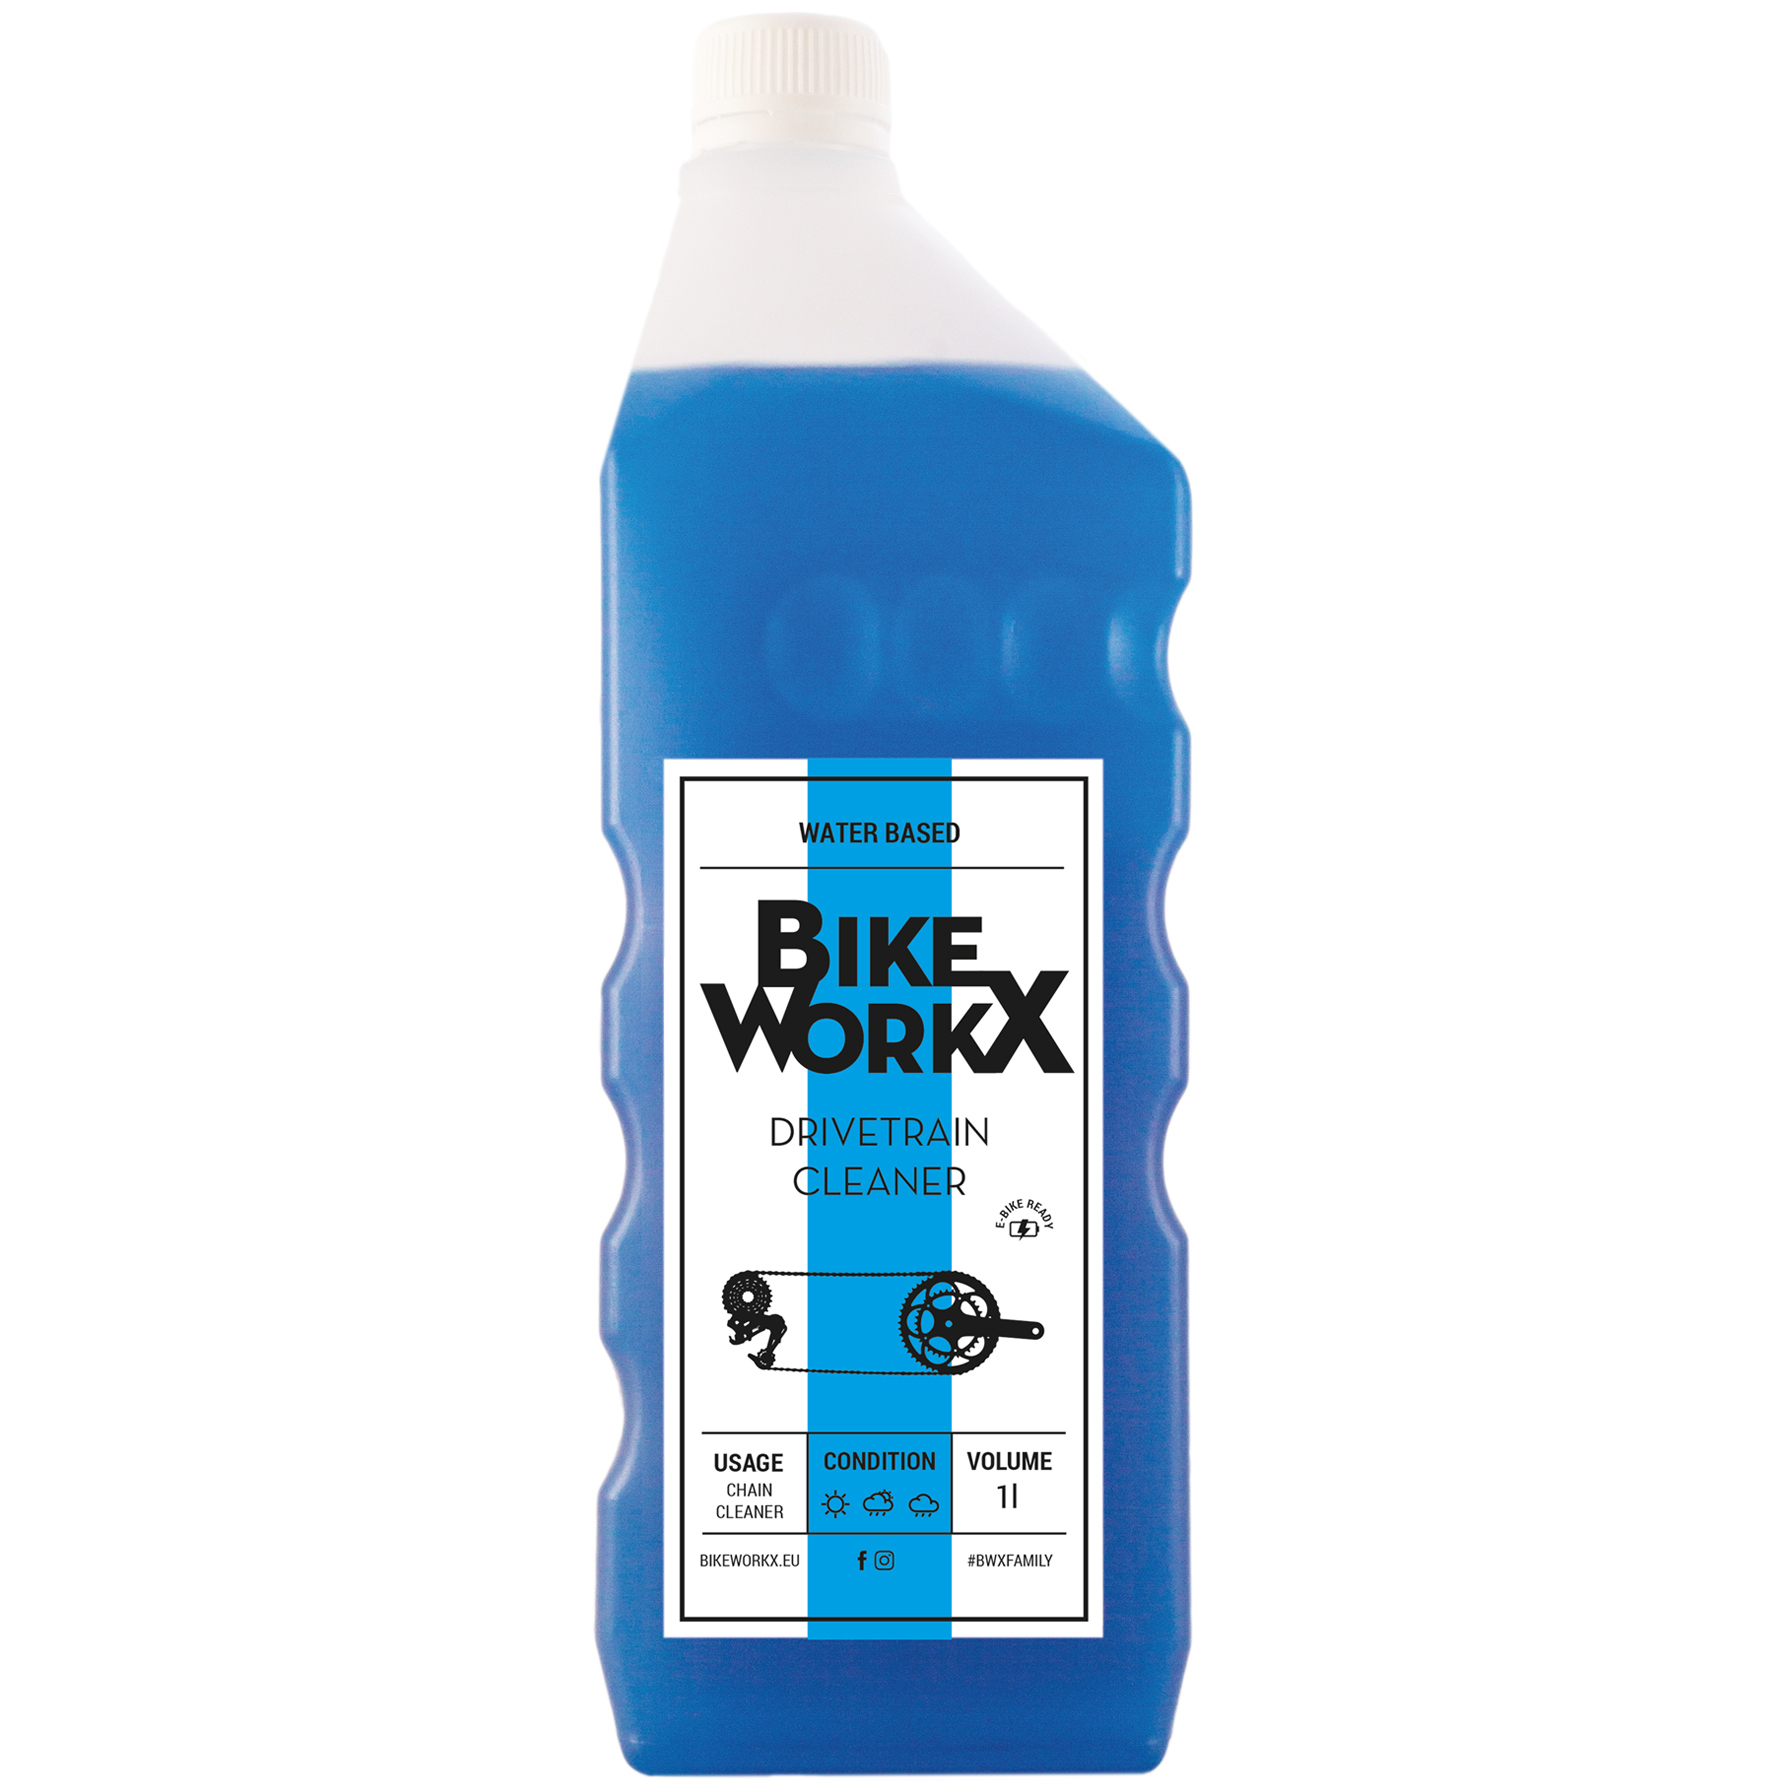 Produktbild von BikeWorkx Drivetrain Cleaner - Antriebreiniger - Flasche 1000ml